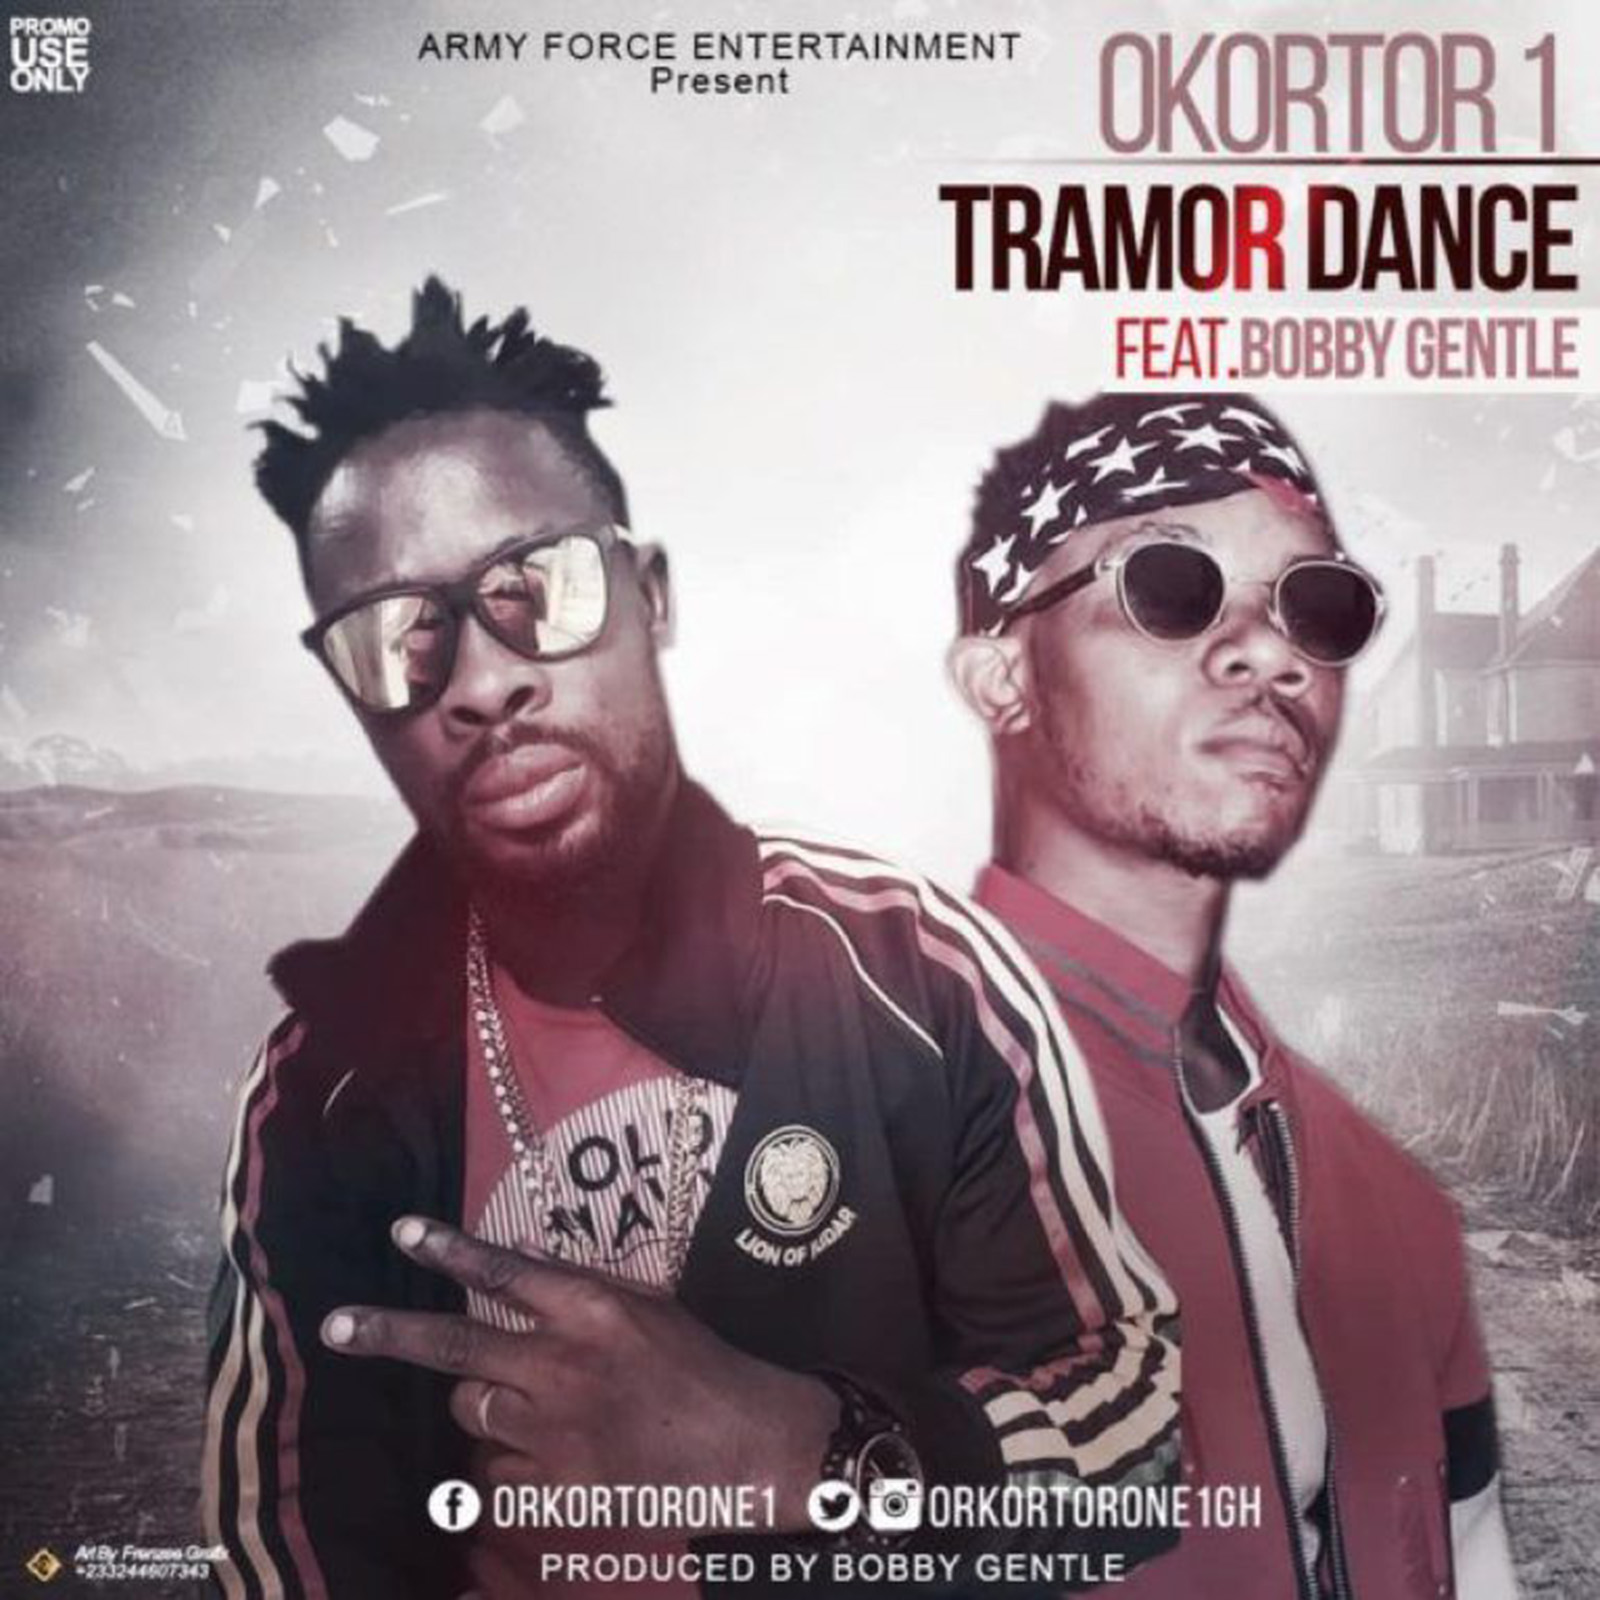 Tramor Dance by Okortor 1 feat. Bobby Gentle